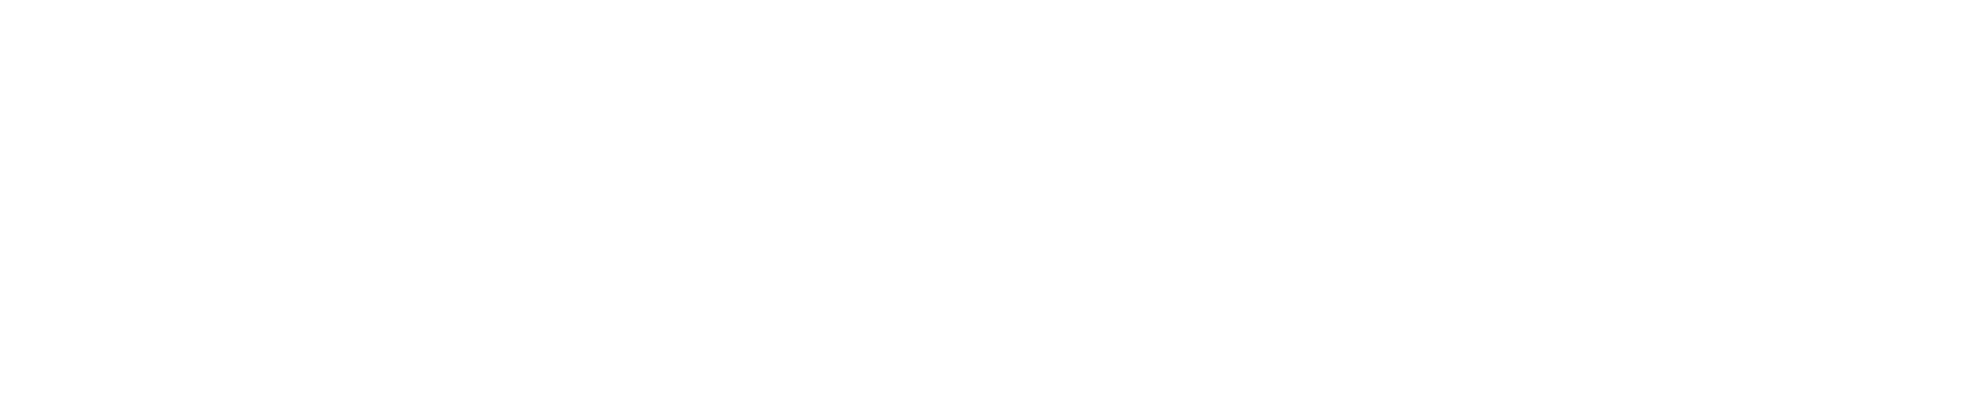 Gefinancierd met subsidie van de Europese Commissie